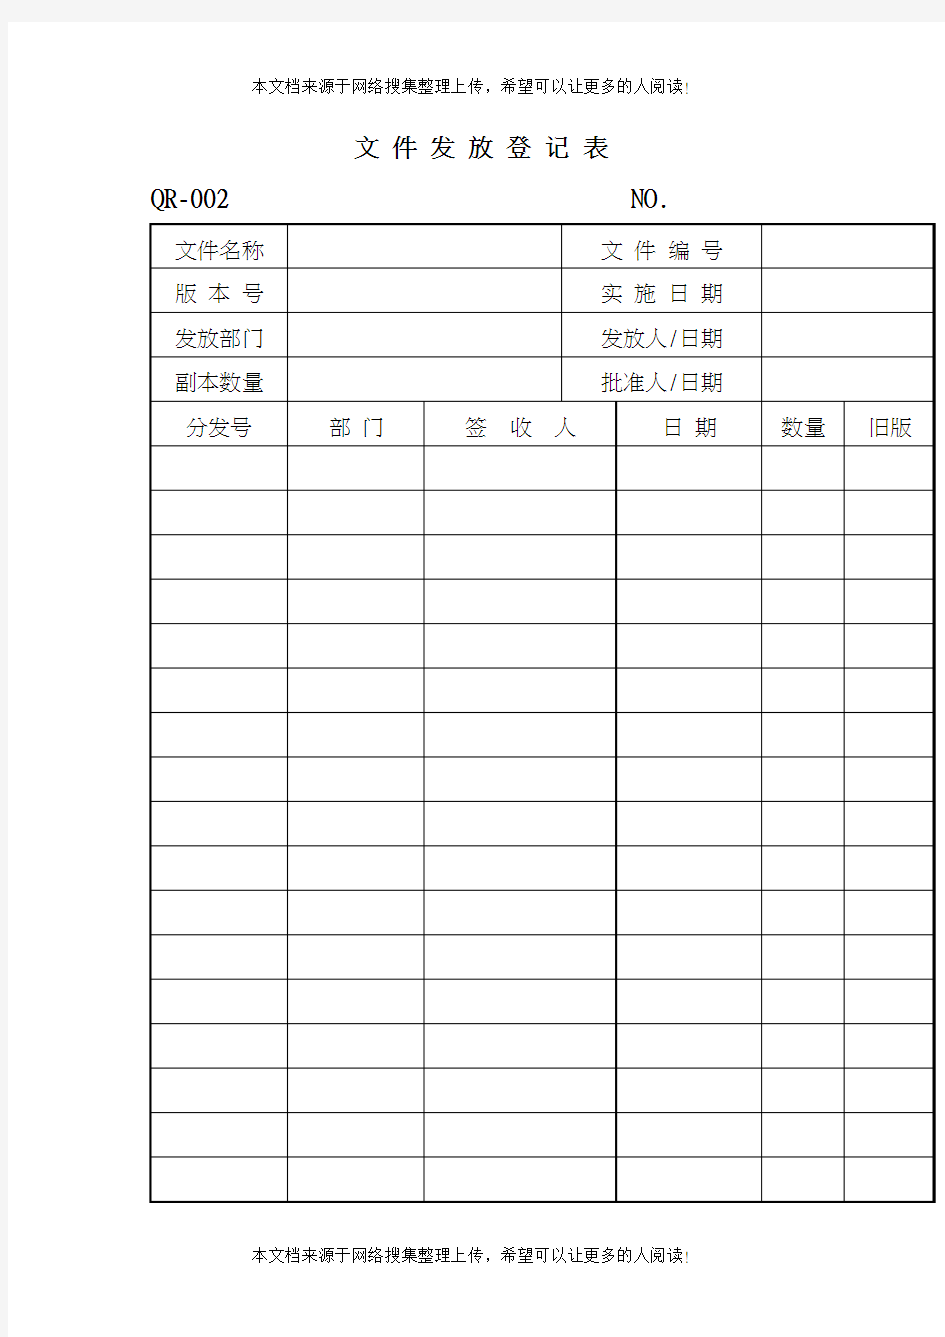 文件发放登记表(表格模板、DOC格式)